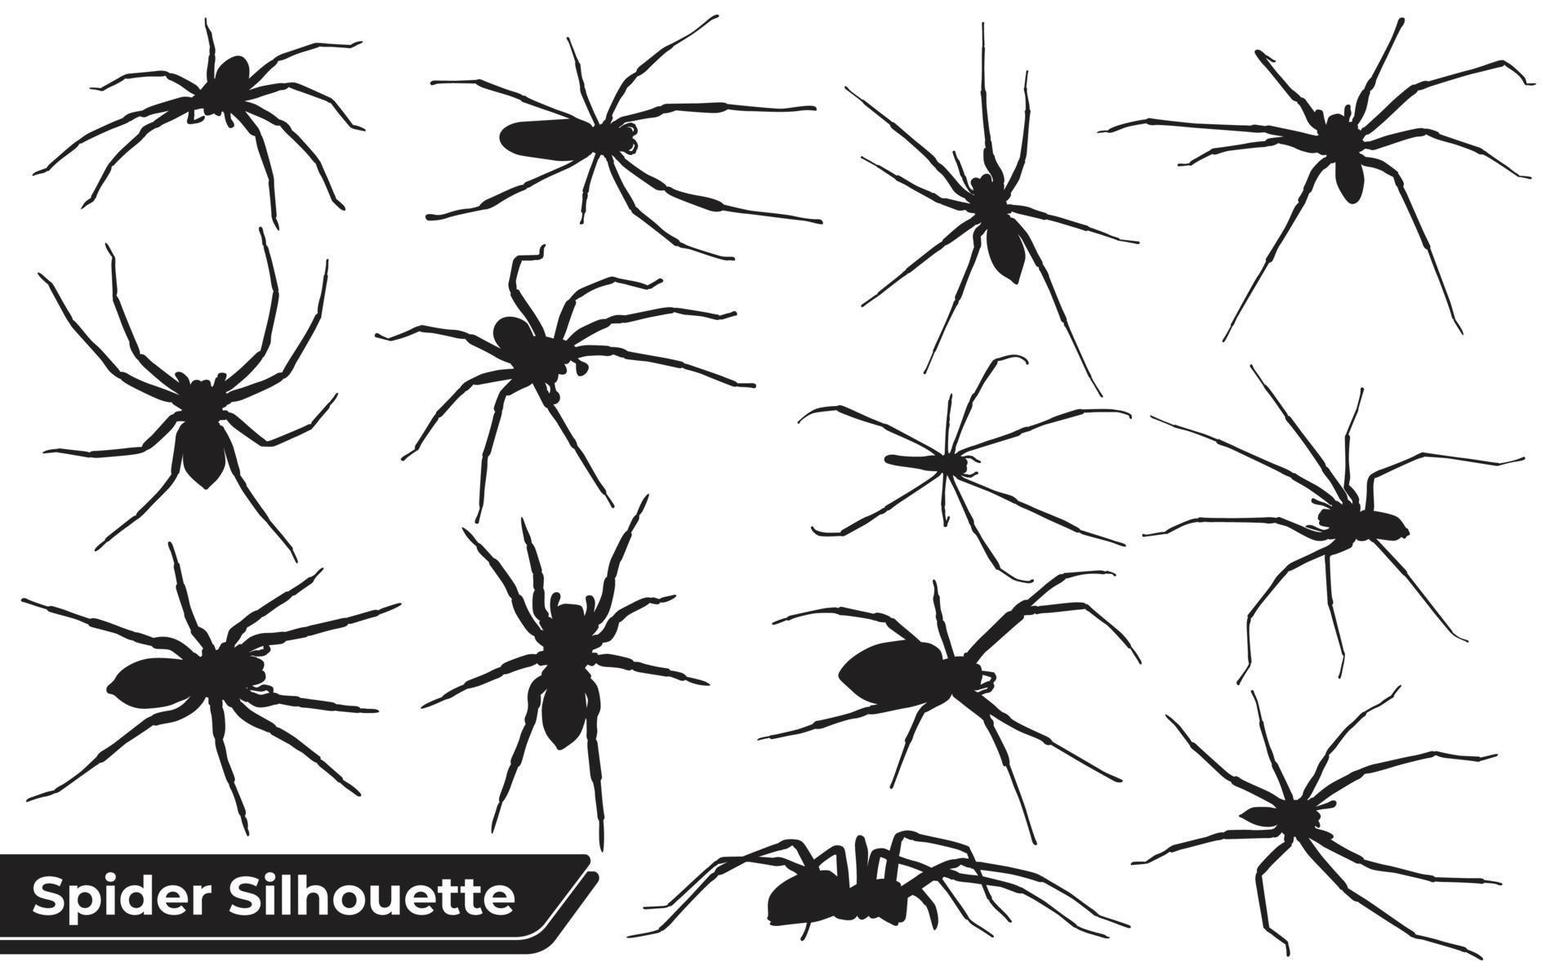 Sammlung von Tierspinnen Silhouette in verschiedenen Posen vektor